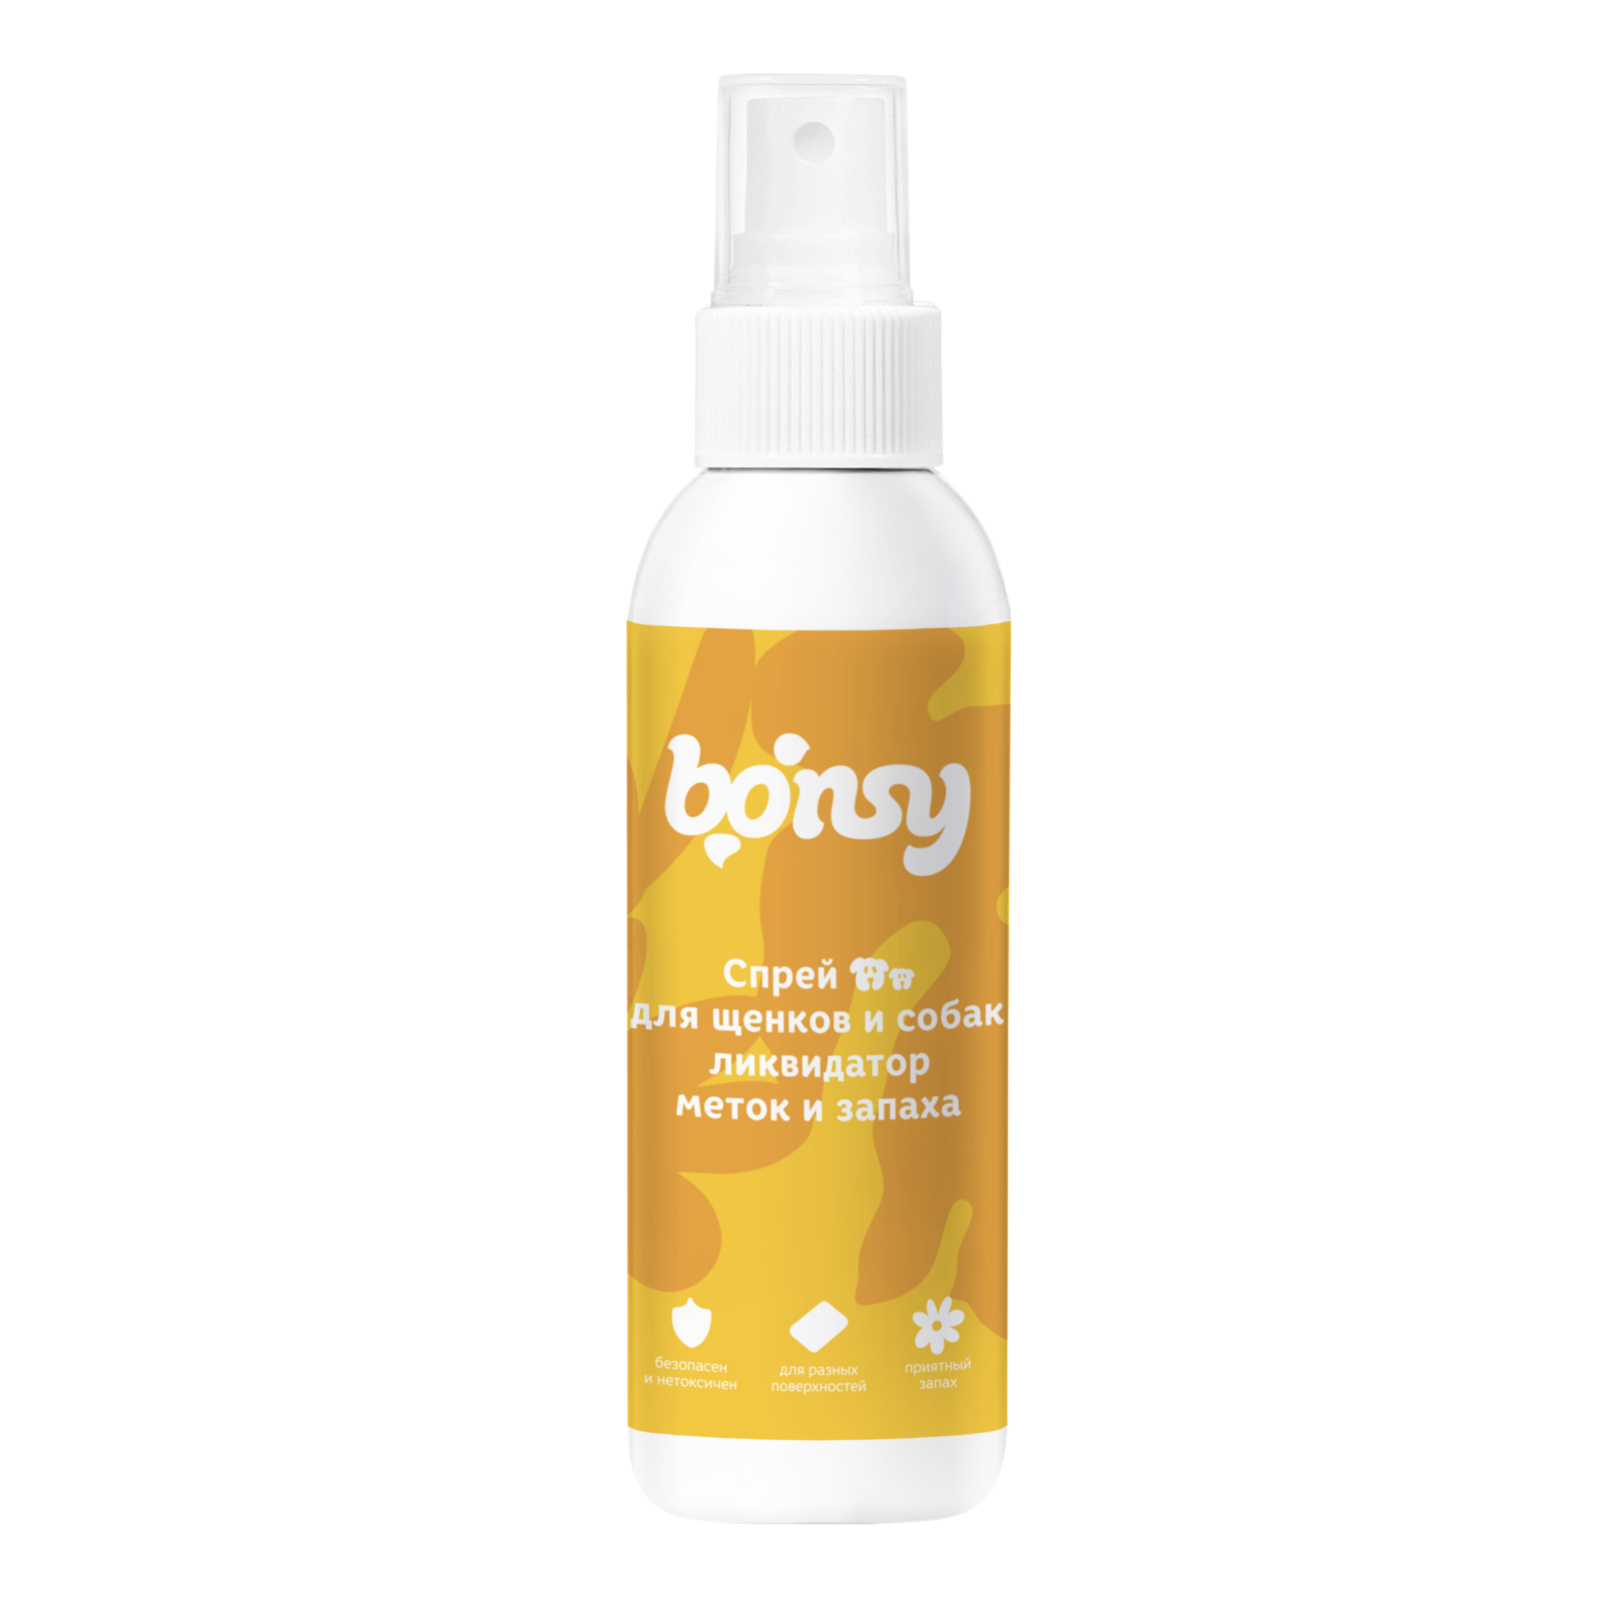 Bonsy Bonsy спрей «Ликвидатор меток и запаха» для щенков и собак (150 г) bonsy bonsy гель для рук с антибактериальным эффектом 150 г